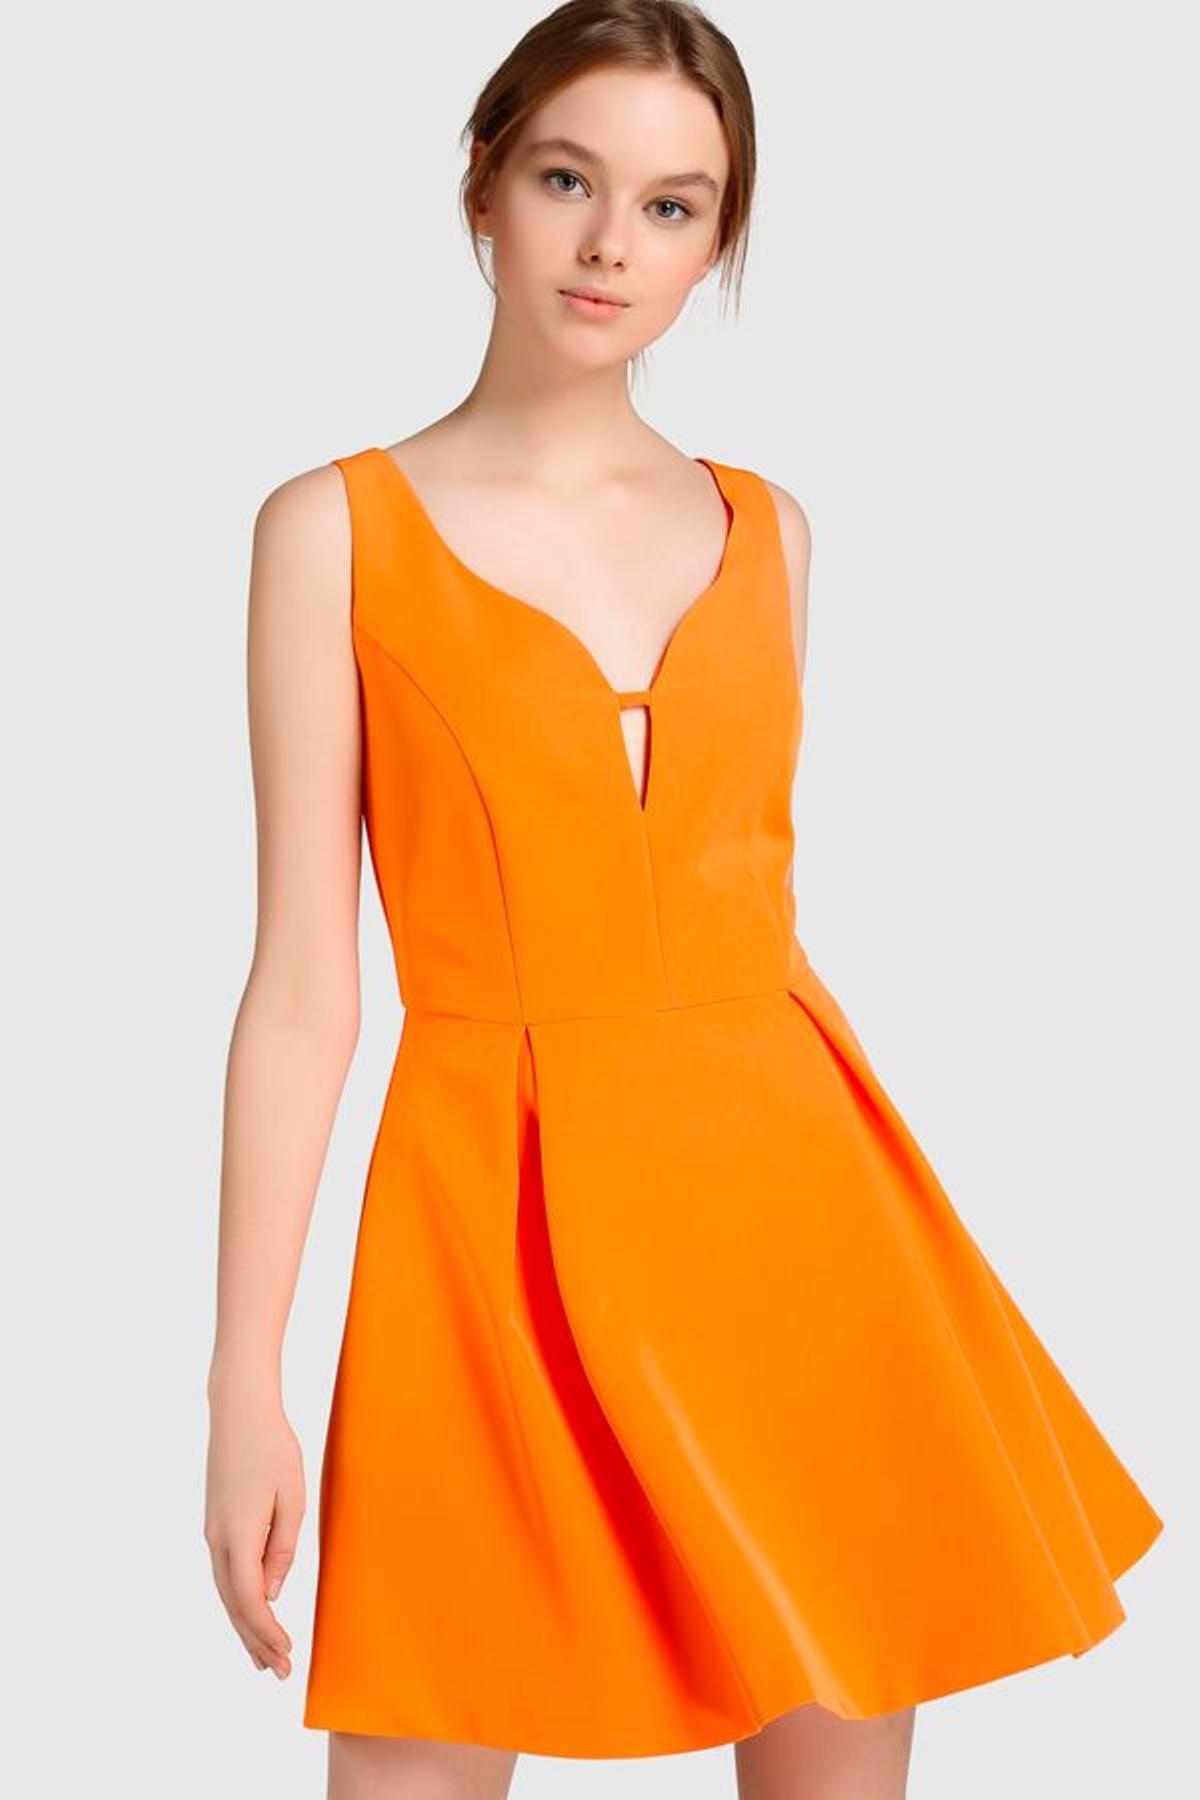 Vestidos de invitada por menos de 50 euros: tangerina, de Green Coast